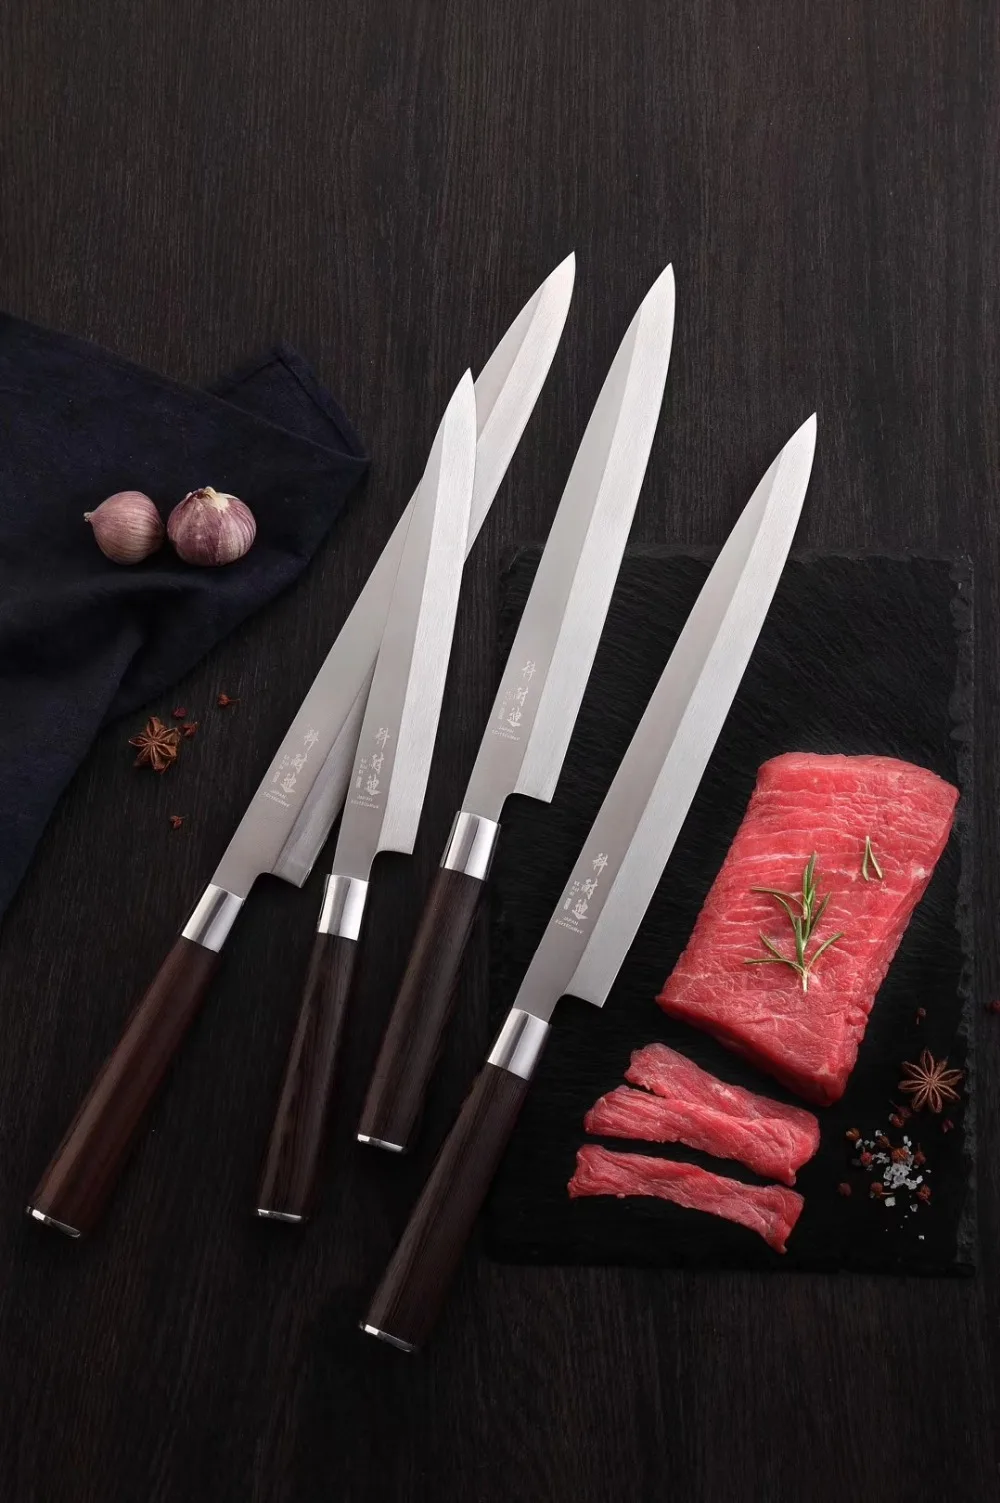 Высокоуглеродистая Нержавеющая сталь 270 мм длина японский янагиба/Сашими/усуба/нож для нарезки шеф-повара японский профессиональный нож для приготовления пищи